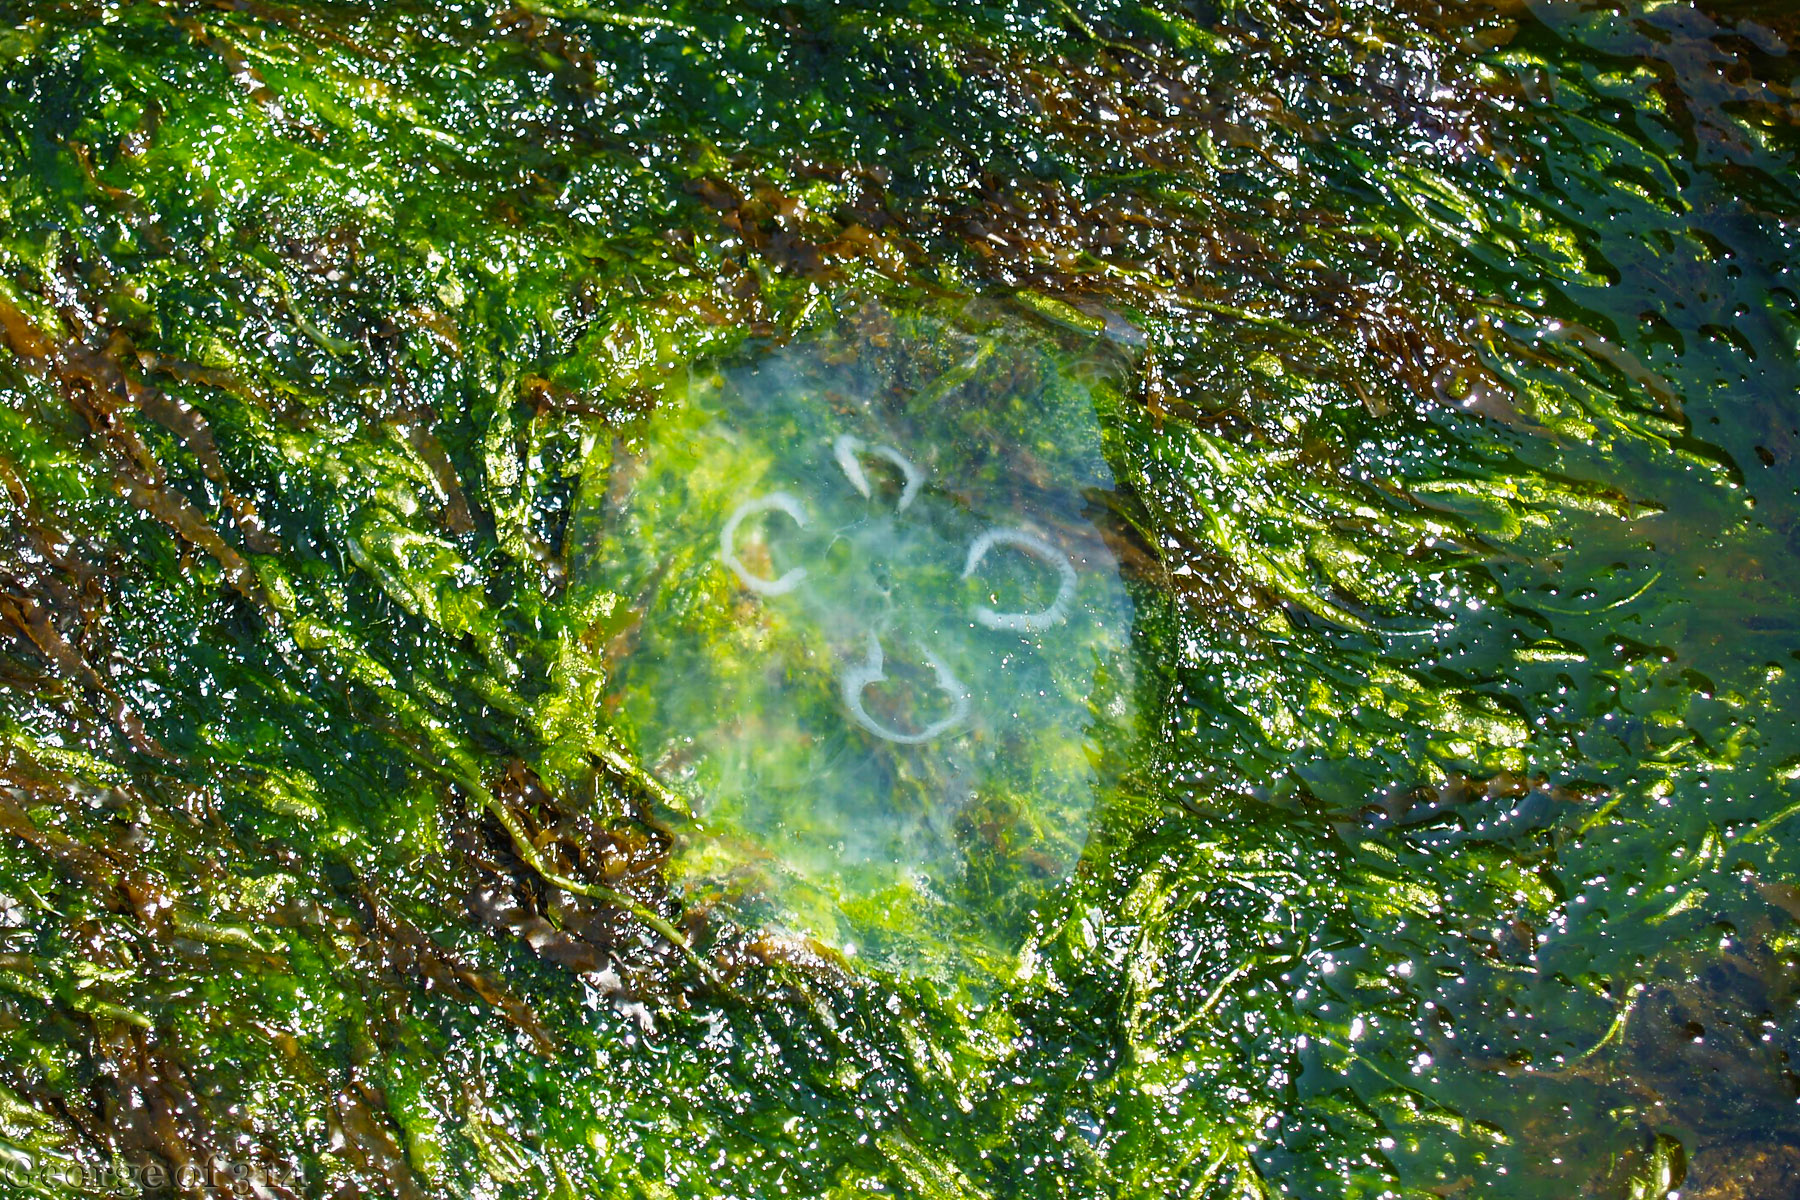 Медуза, яка залишилась на волнорізі після відходу хвилі